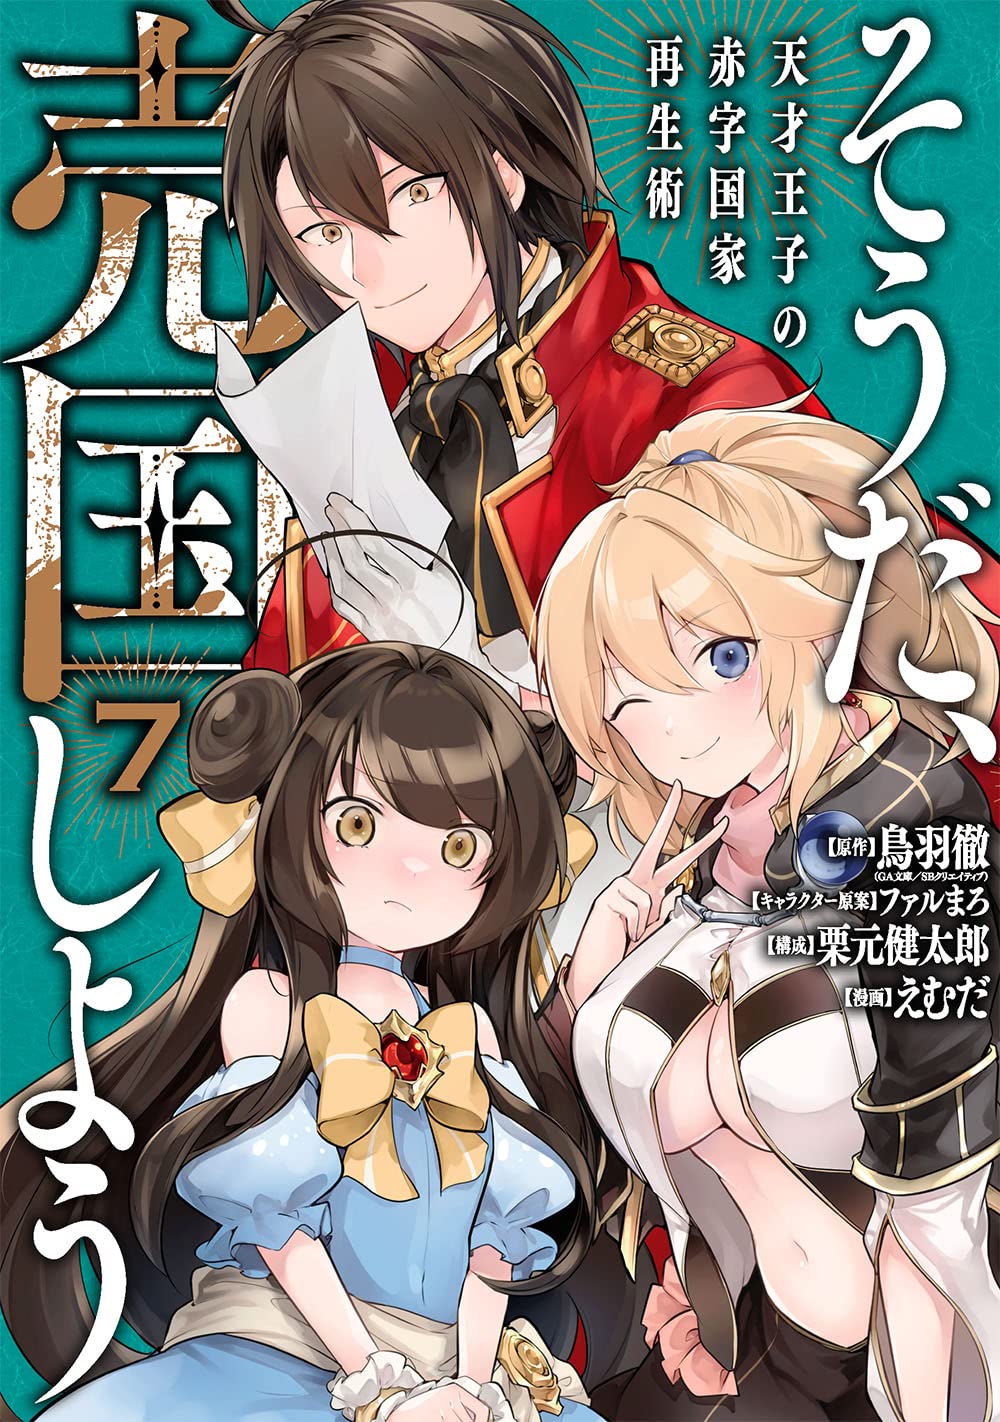 Light Novel Volume 5, Tensai Ouji no Akaji Wiki